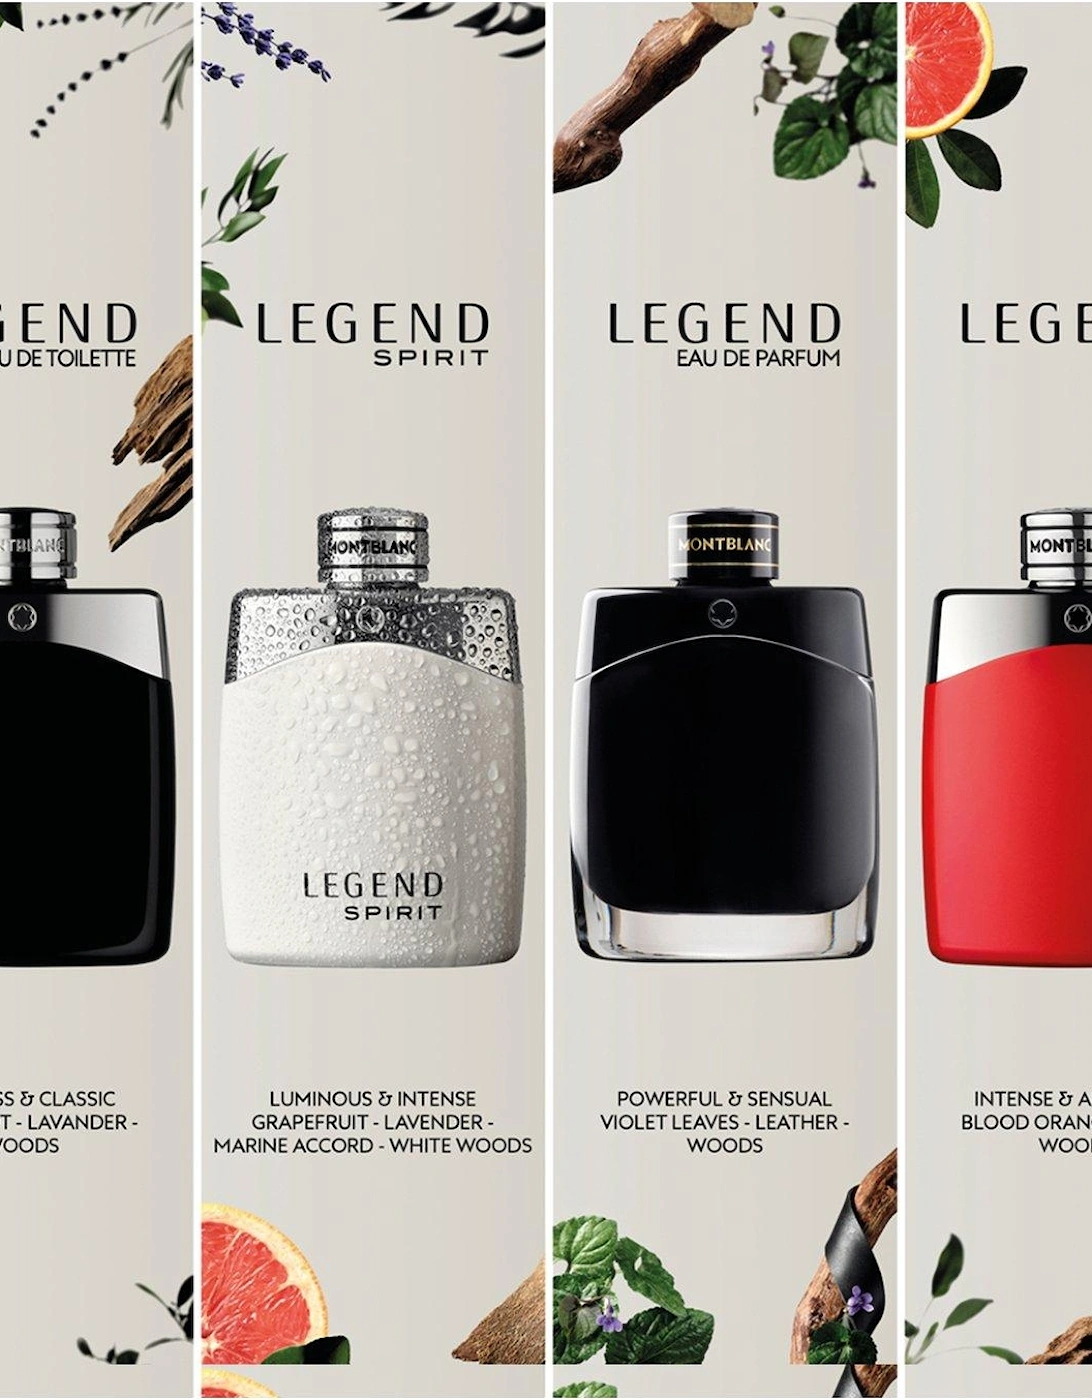 Legend Eau de Parfum